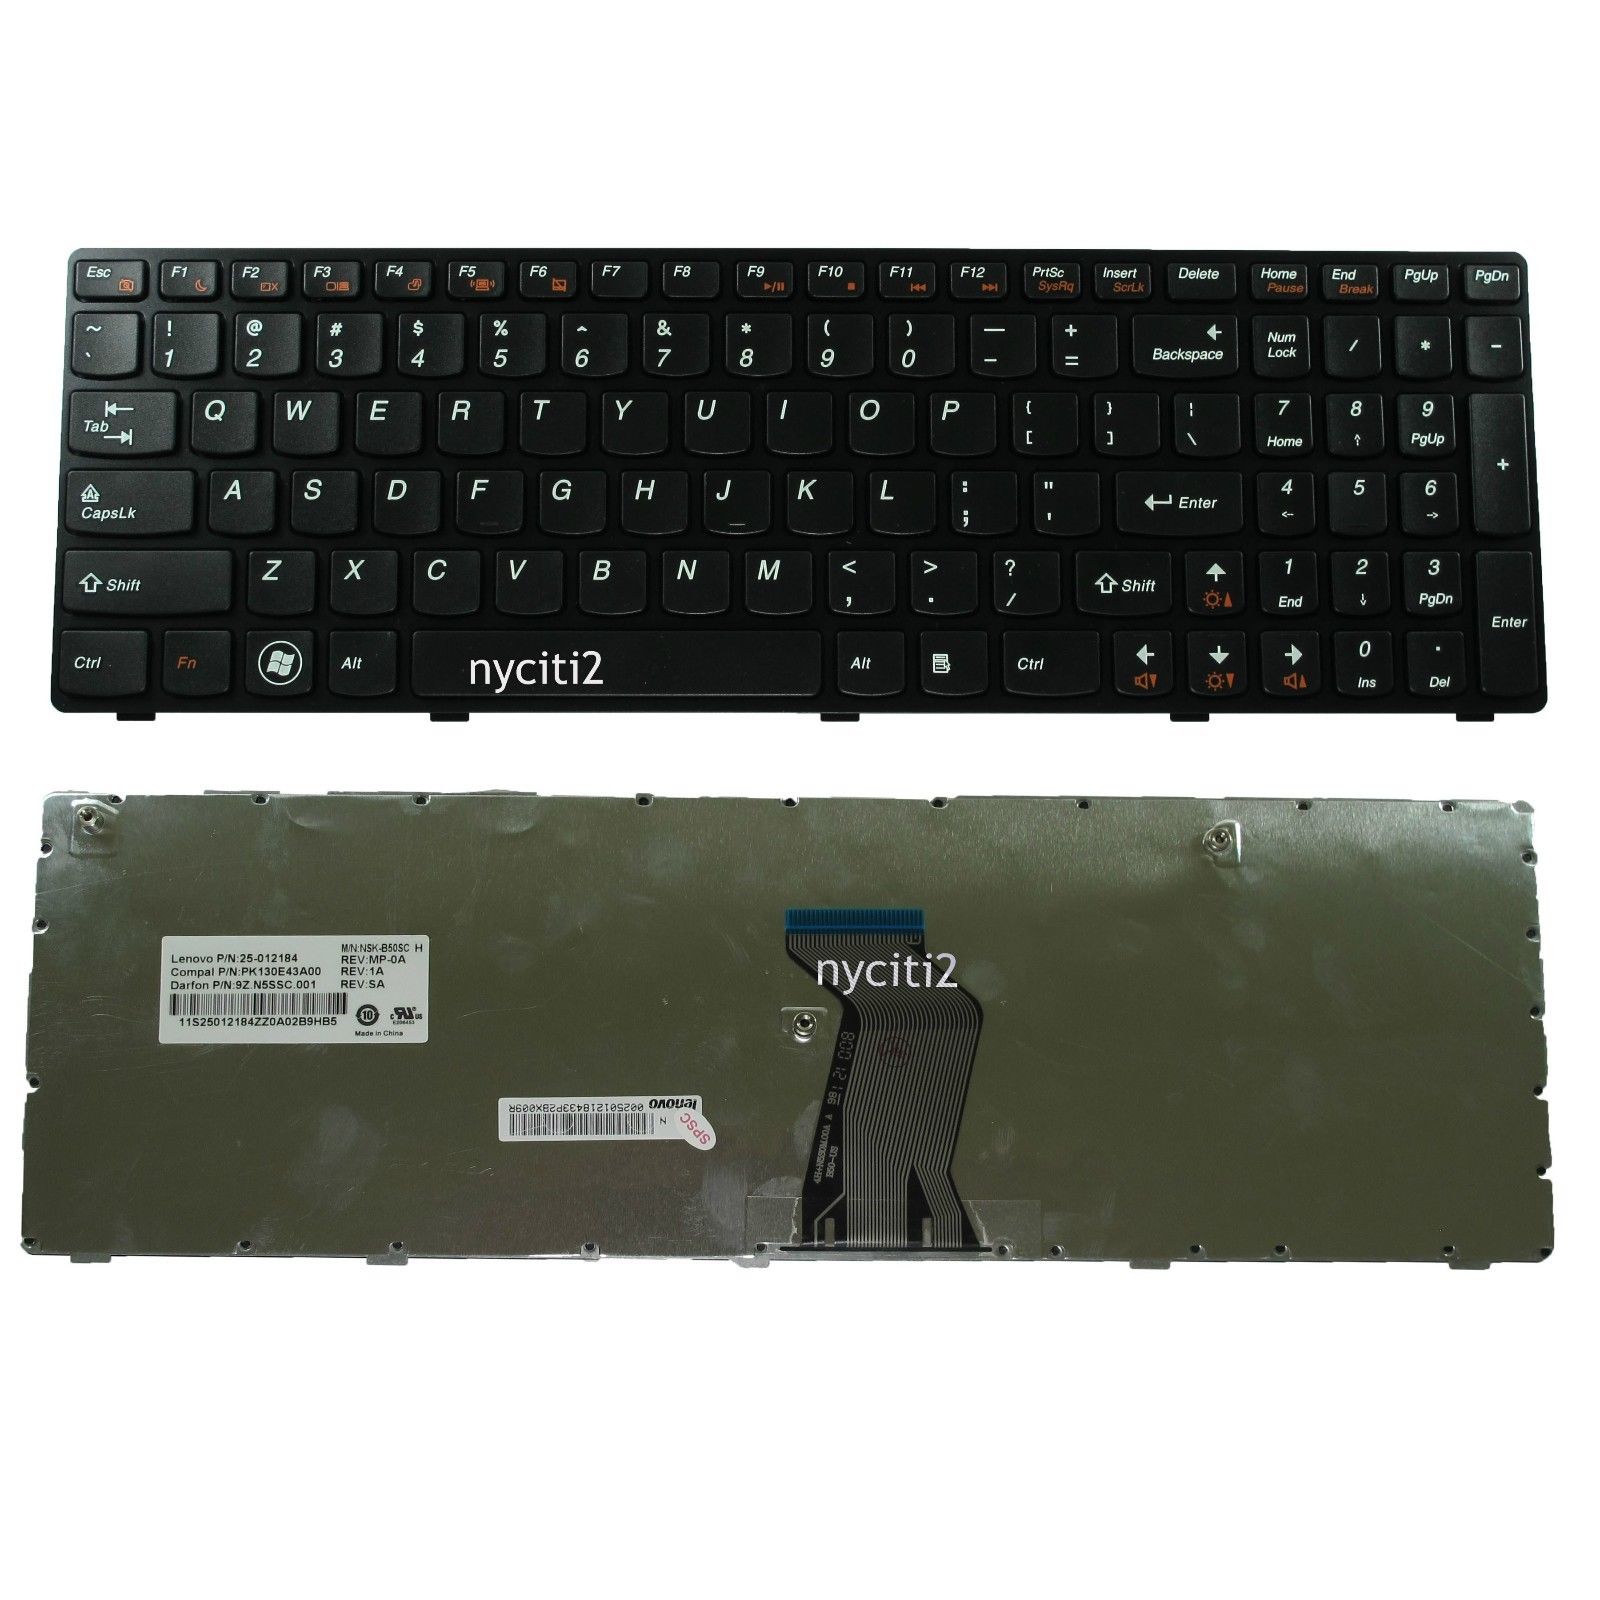 NEW for IBM Lenovo G570E 25-012184 25-012185 25-012186 MP-10A33US-6864 Keyboard